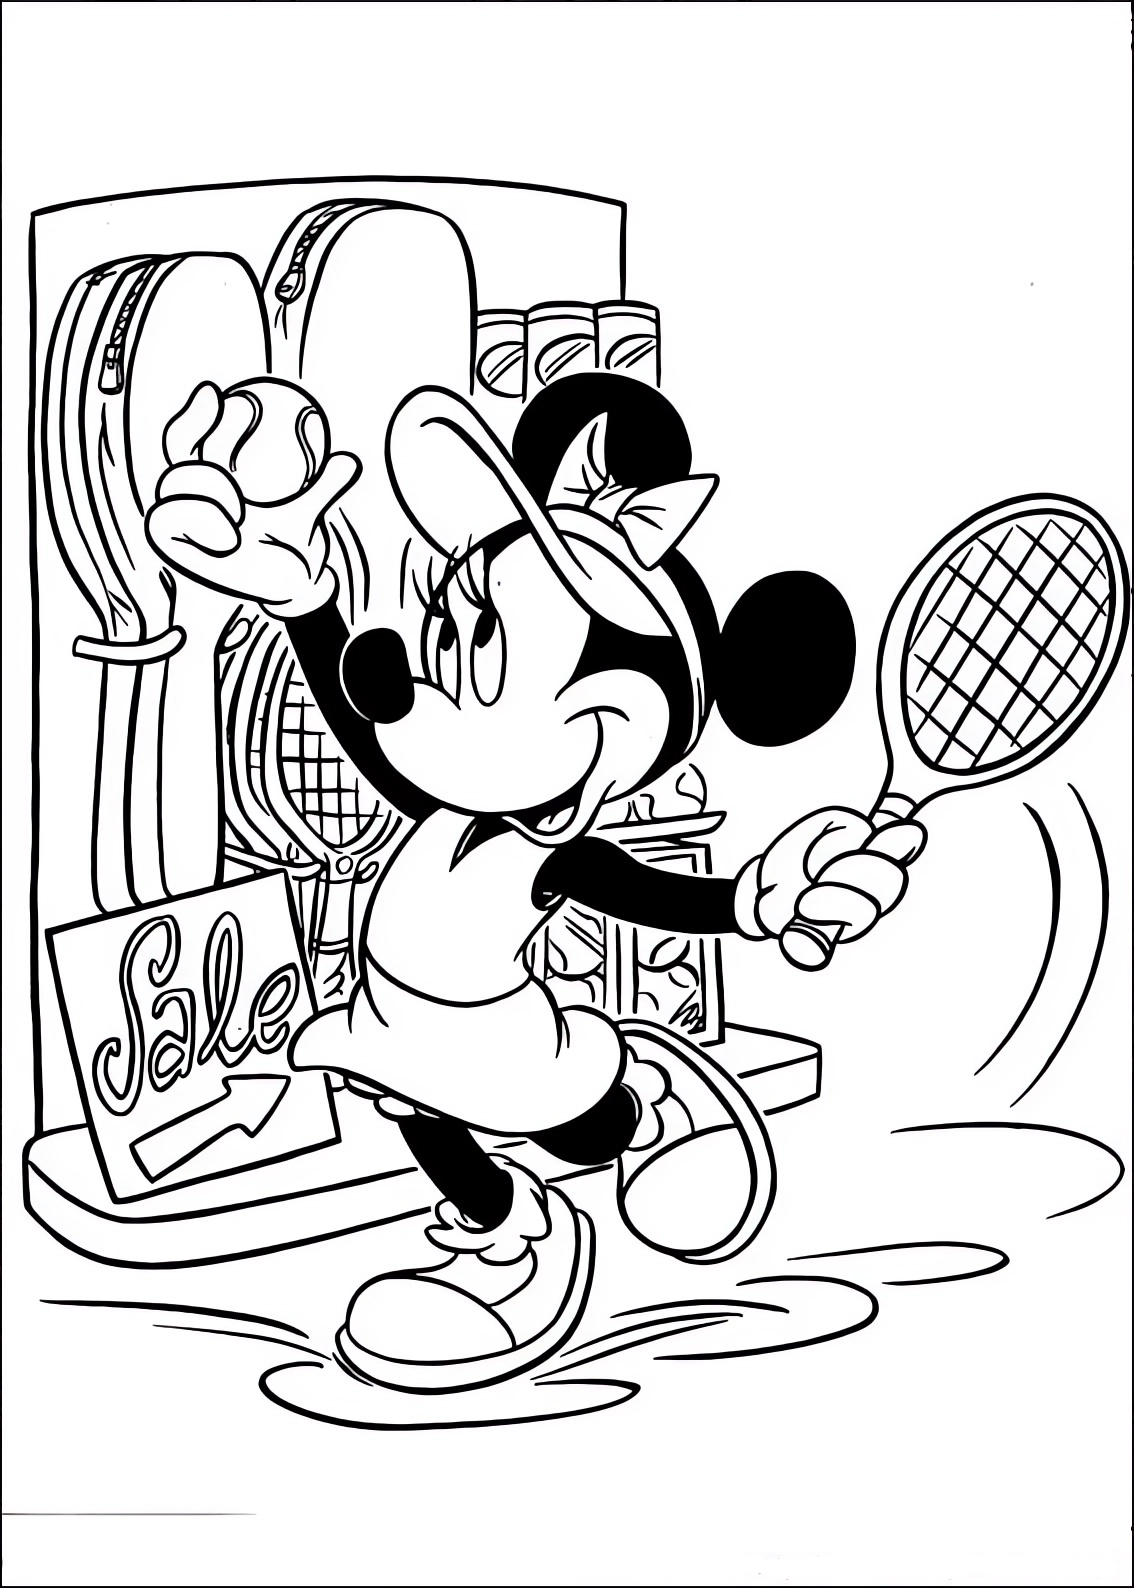 Disegno da colorare di Minnie che sceglie la racchetta da tennis da acquistare